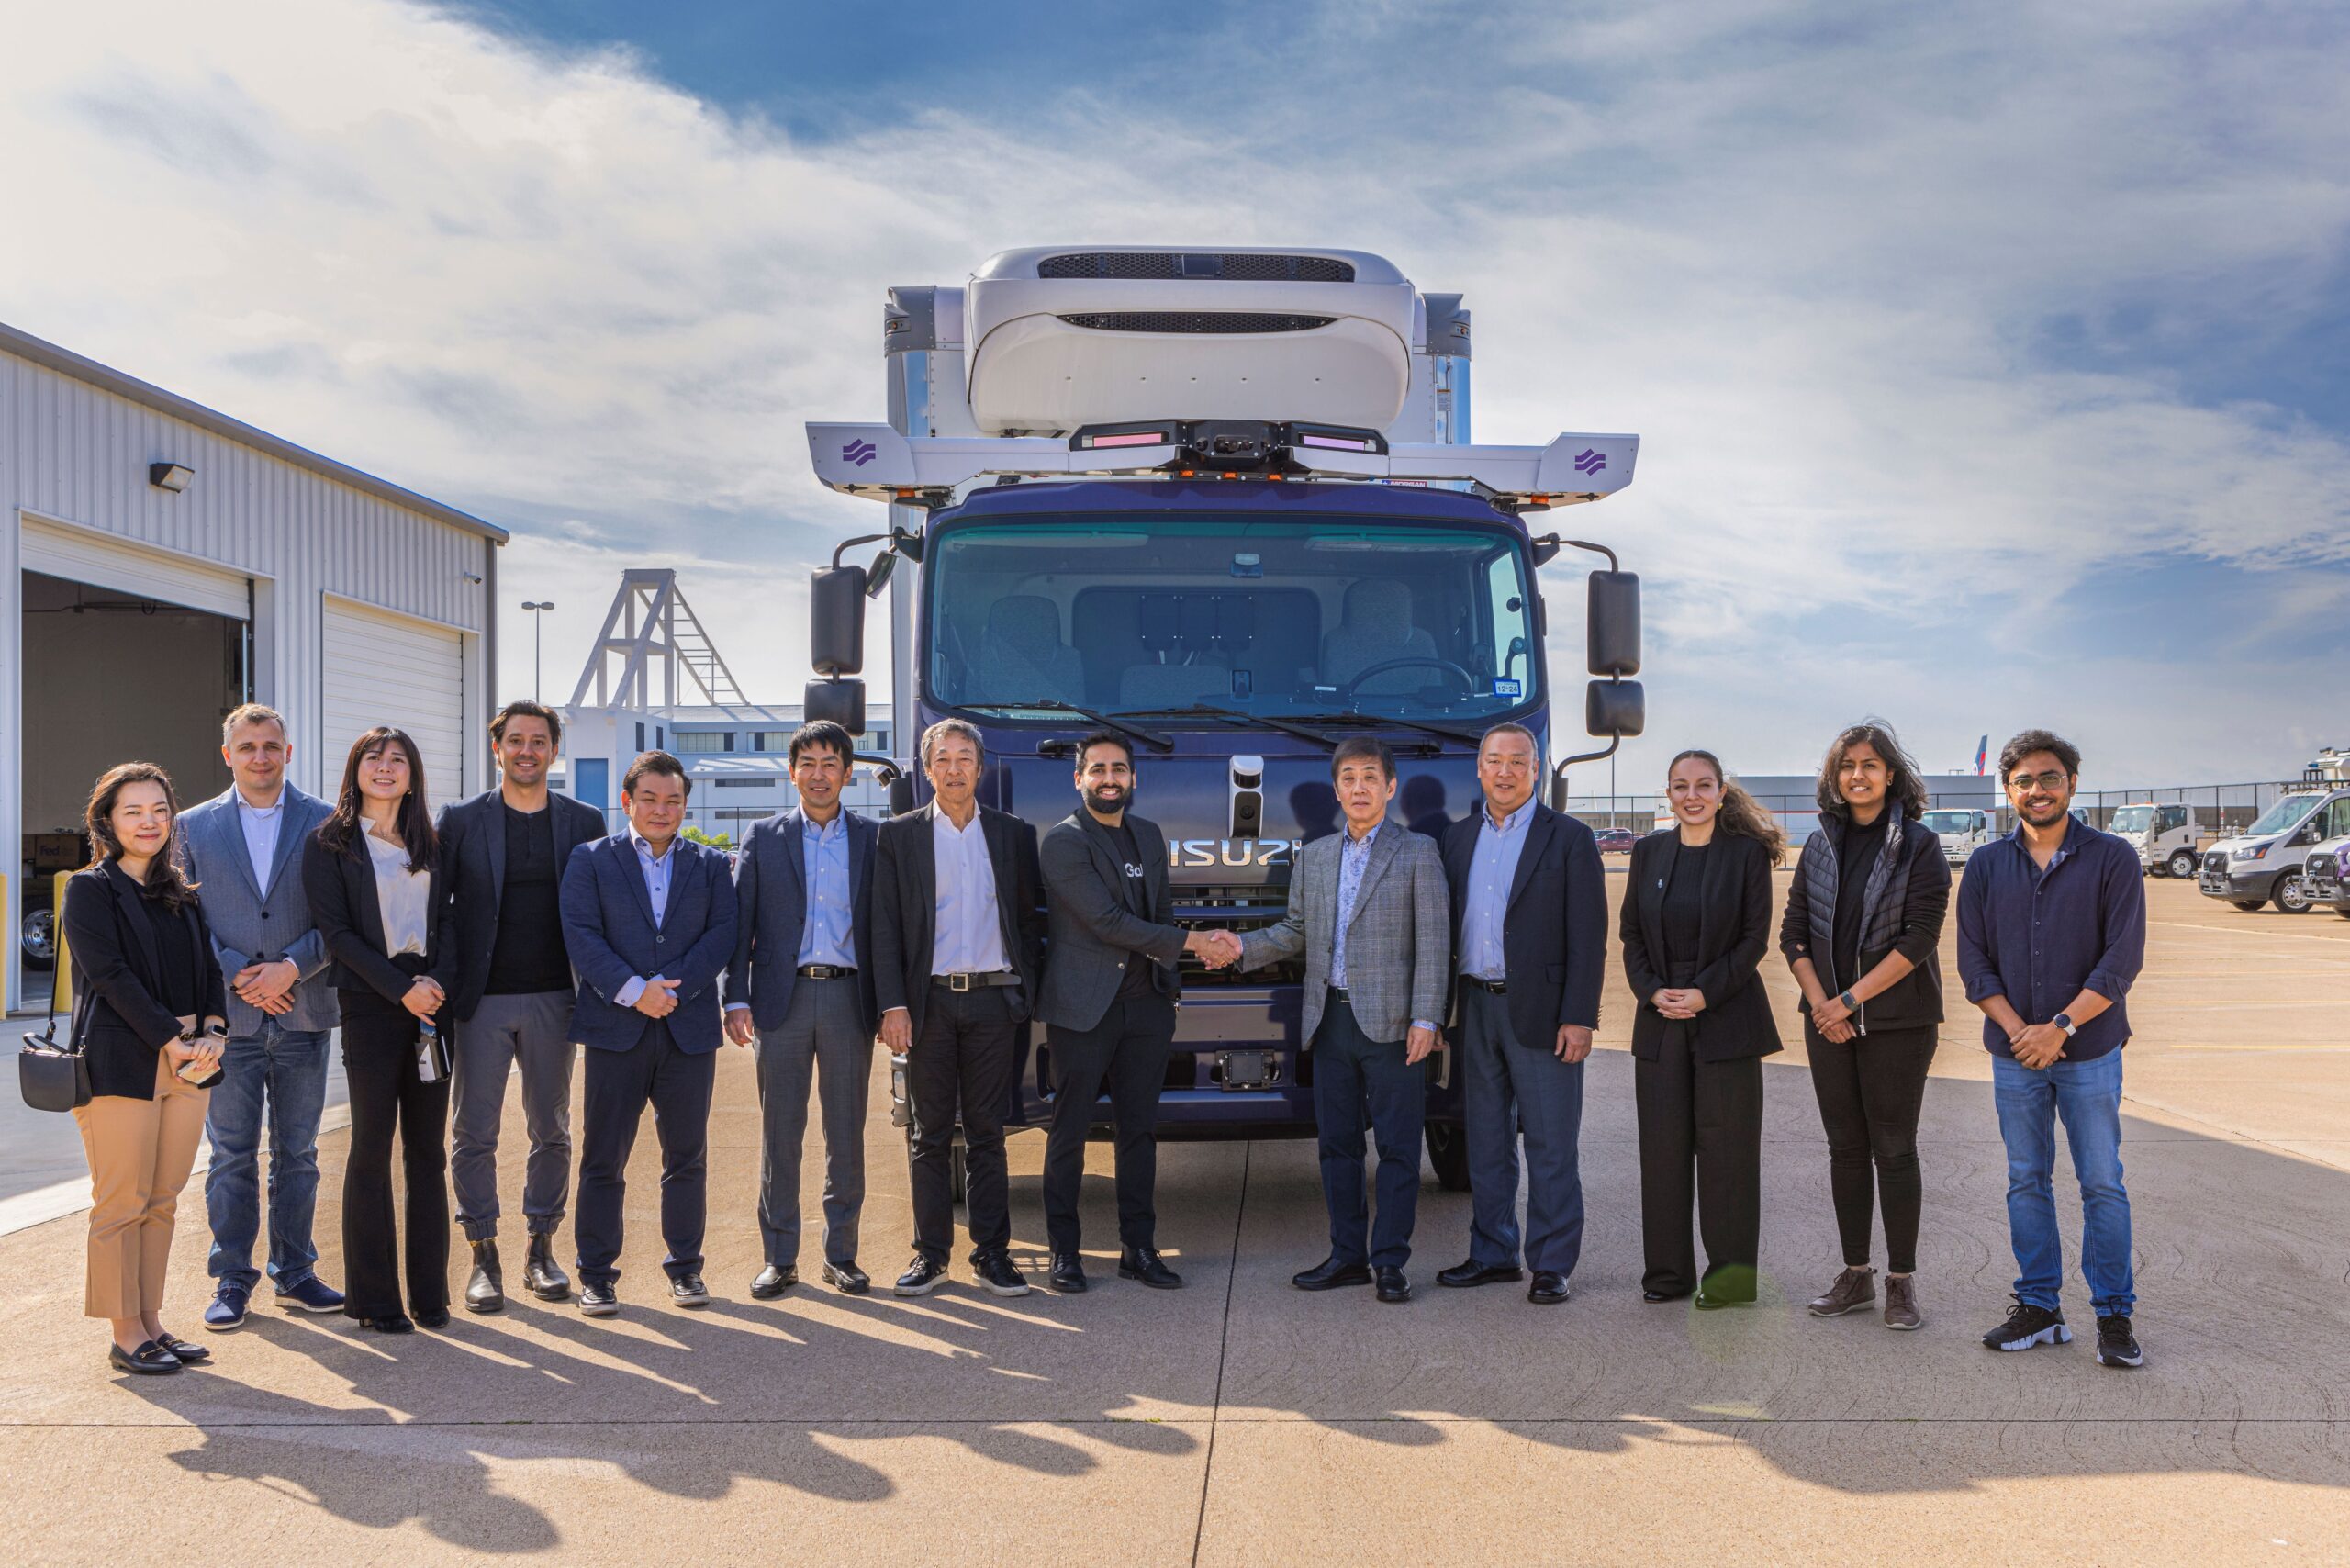 Partnering with Isuzu to mass produce SAE Level 4 autonomous trucks